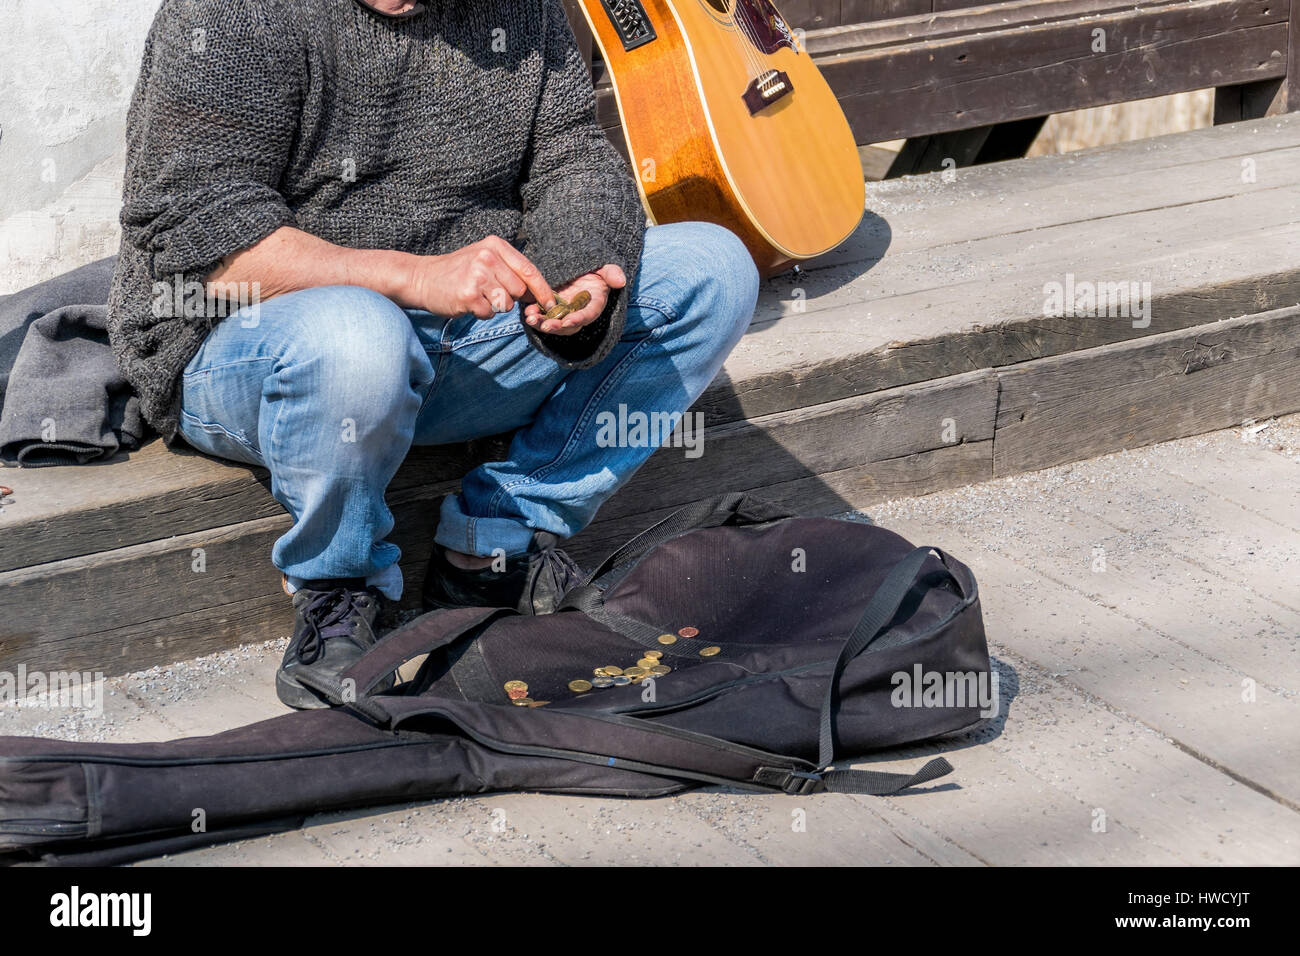 A street musician counts his income. survive as an artist, Ein Strassenmusiker zählt seine Einnahmen. Überleben als Künstler Stock Photo